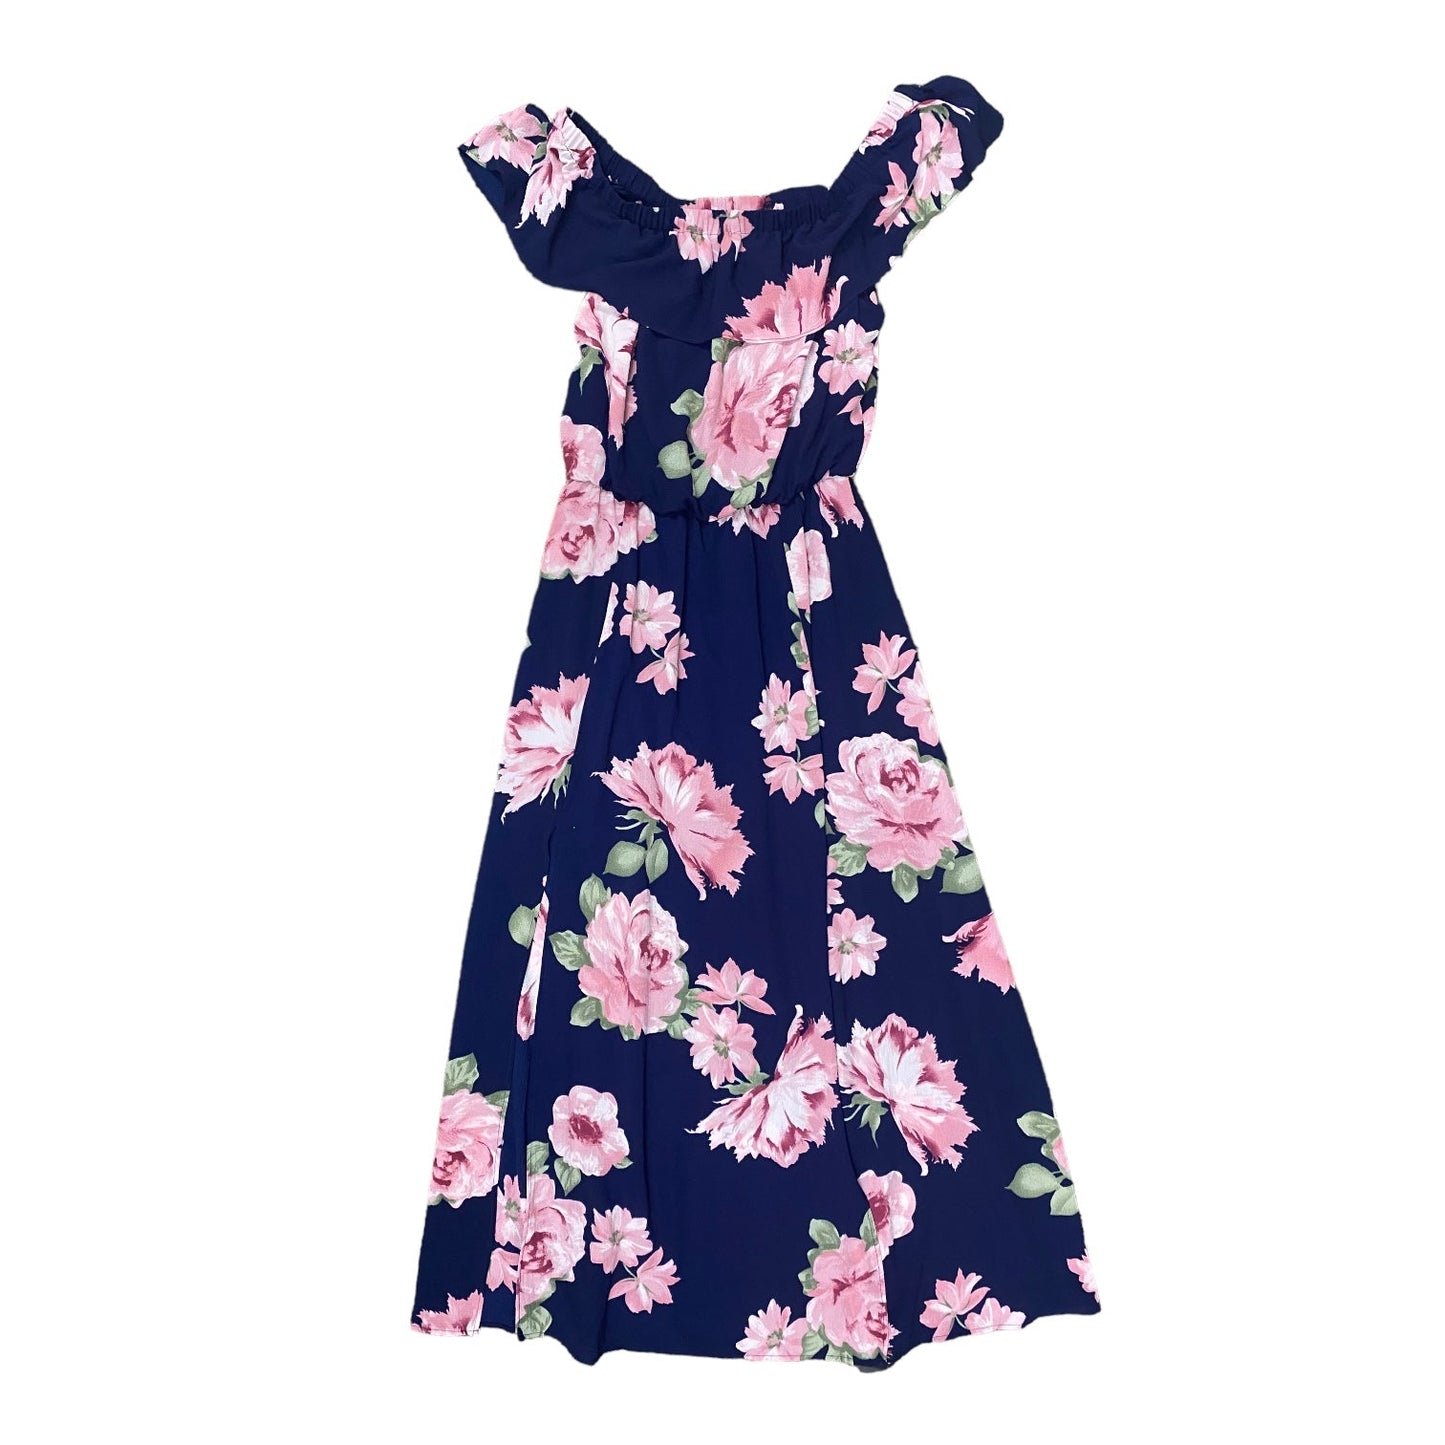 Floral Print Dress Casual Maxi PREMIER AMOUR, Size 14